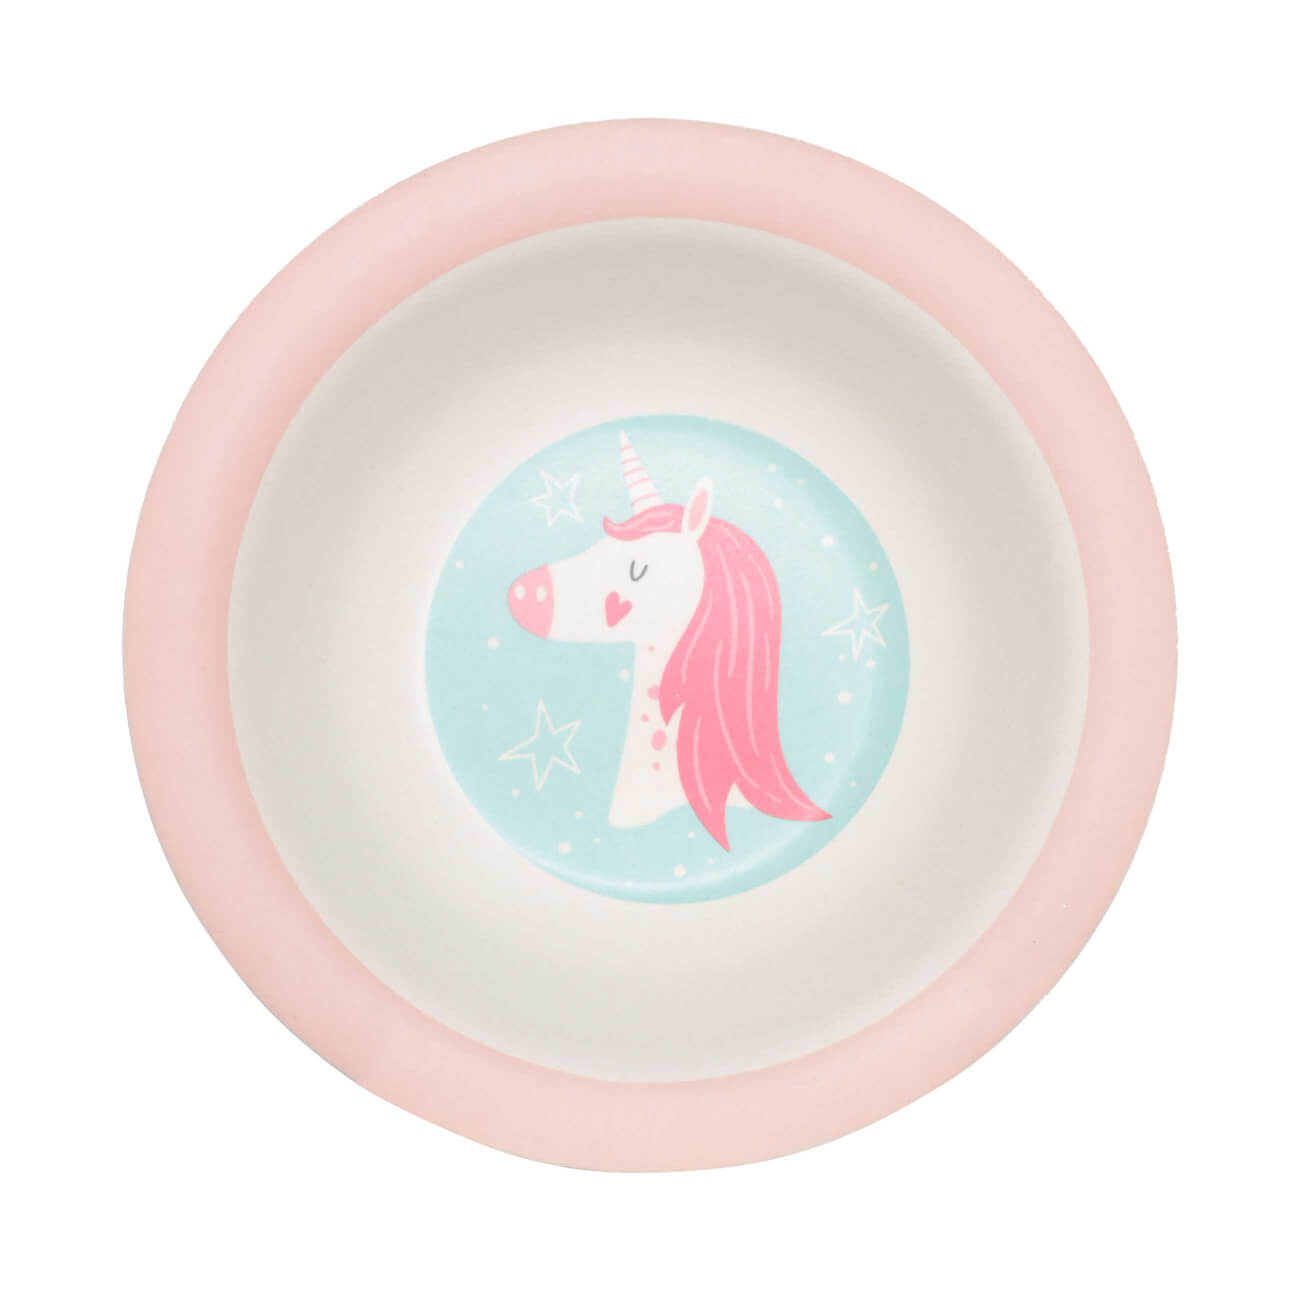 Тарелка суповая, детская, 15 см, бамбук, розово-мятная, Единорог и звезды, Unicorn тарелка детская из бамбука трехсекционная